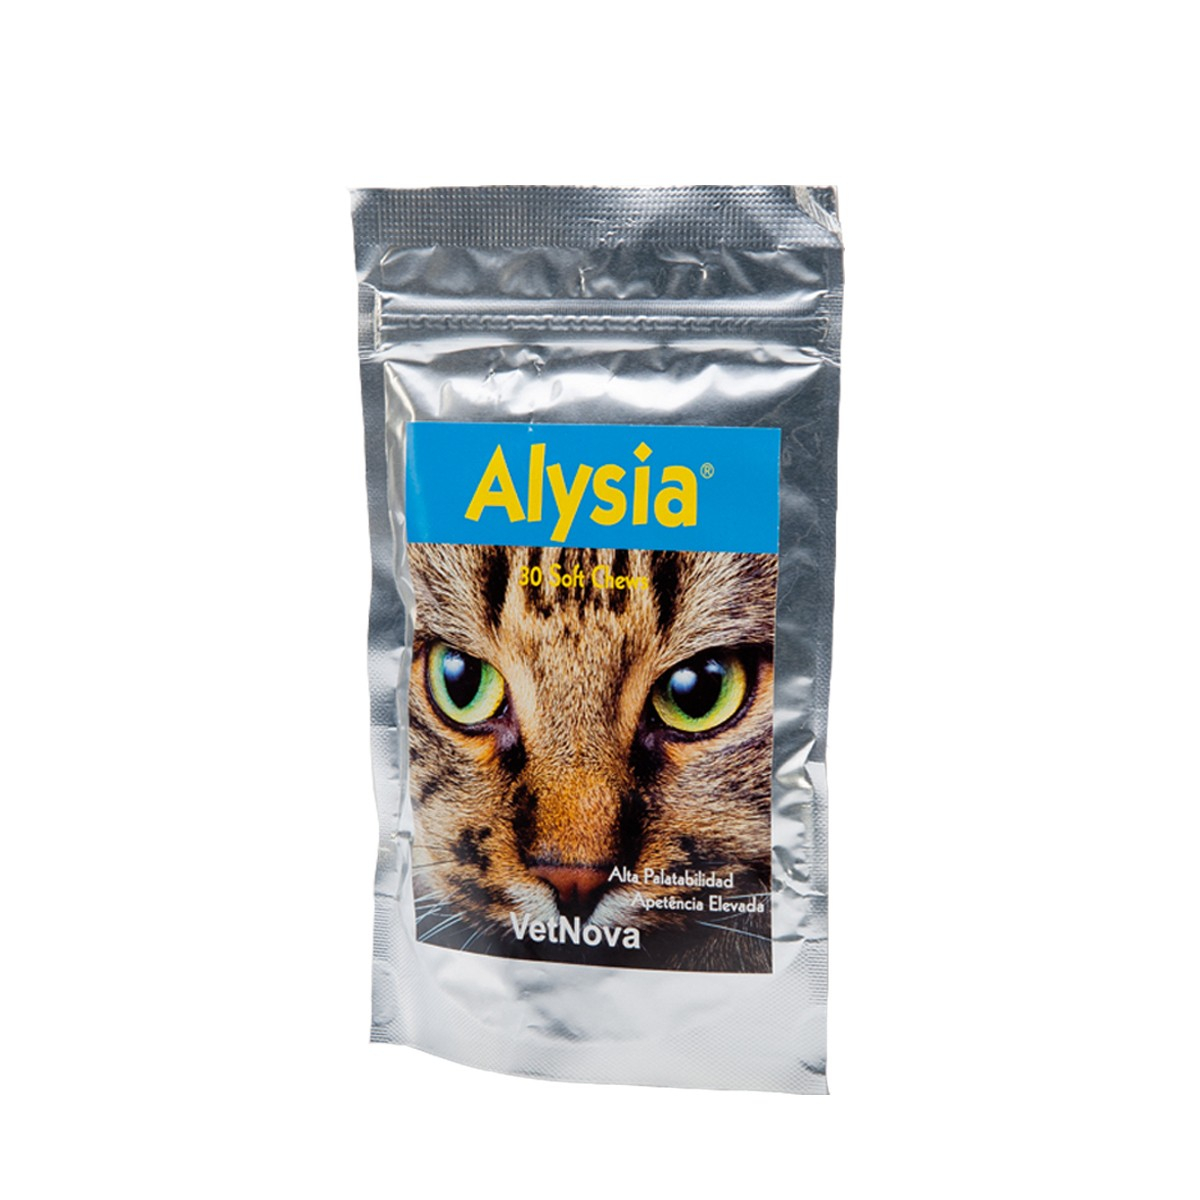 VETNOVA Alysia Lisina complemento alimenticio para gatos